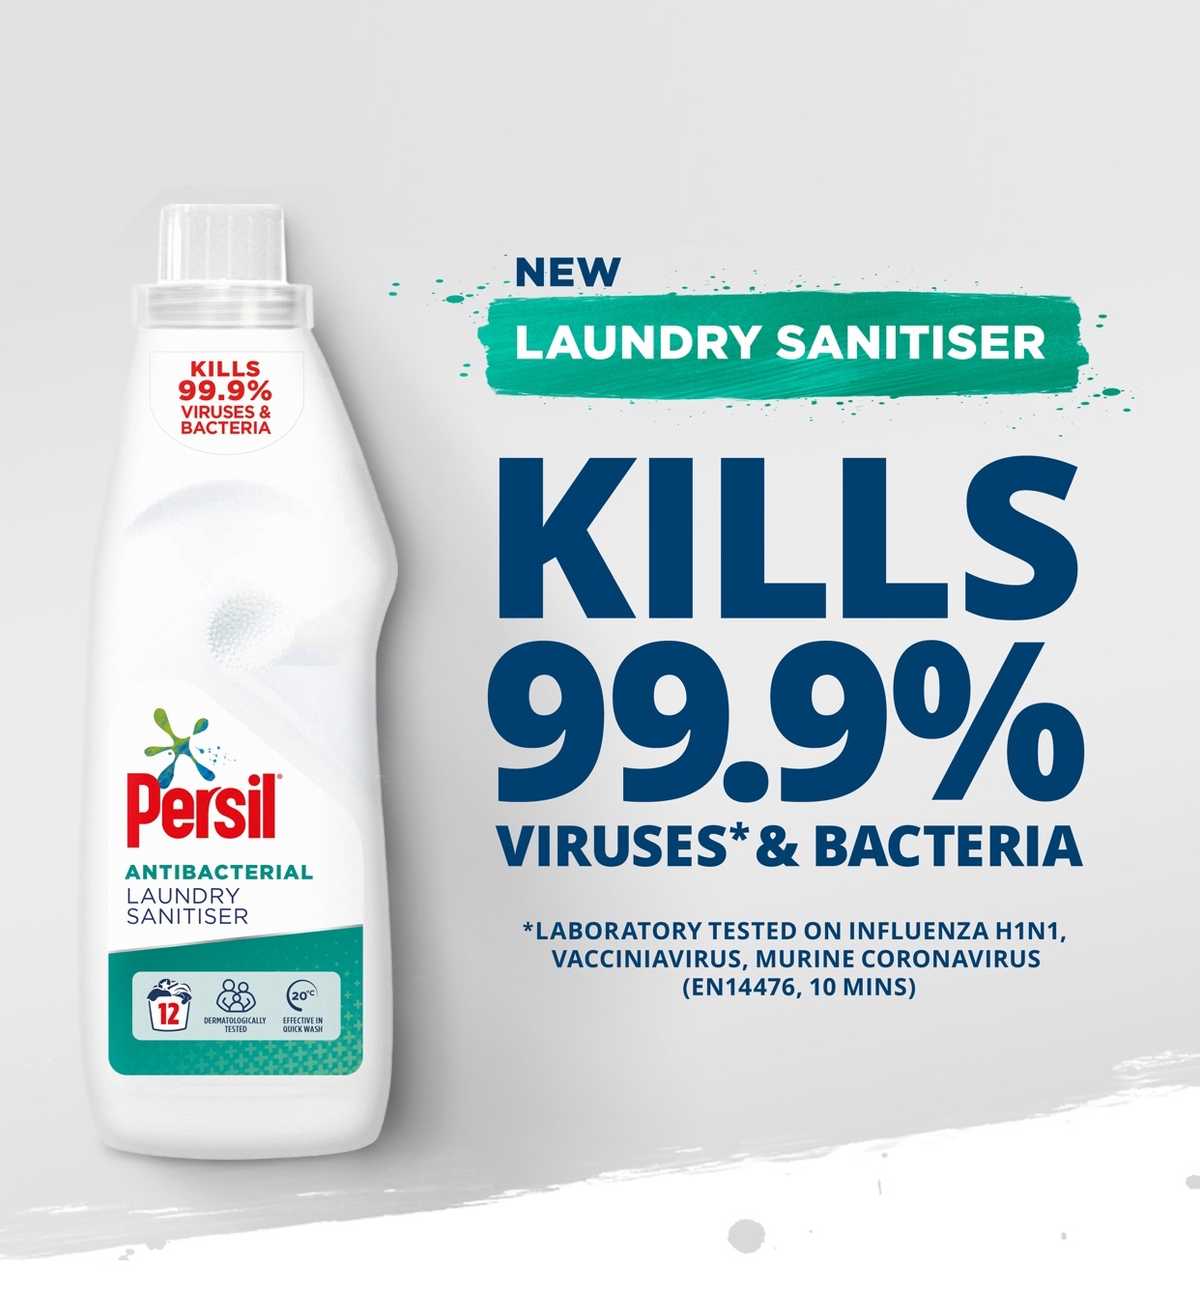 New Laundry Sanitiser. Kills 99.9% of viruses and bacteria